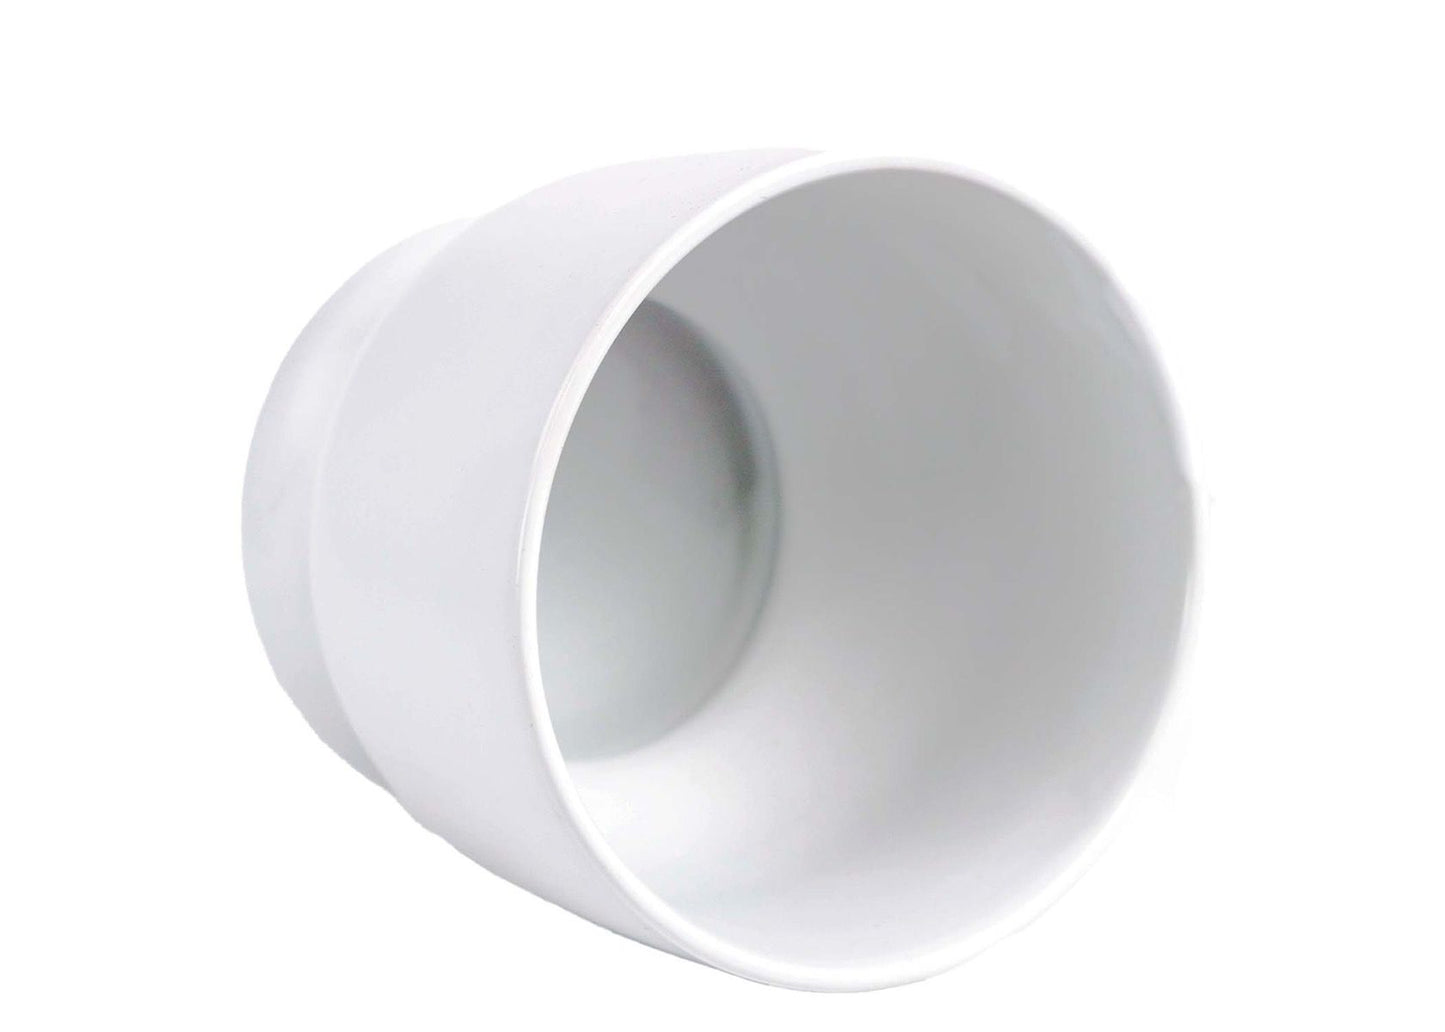 5" Modern Ceramic Bowl - White